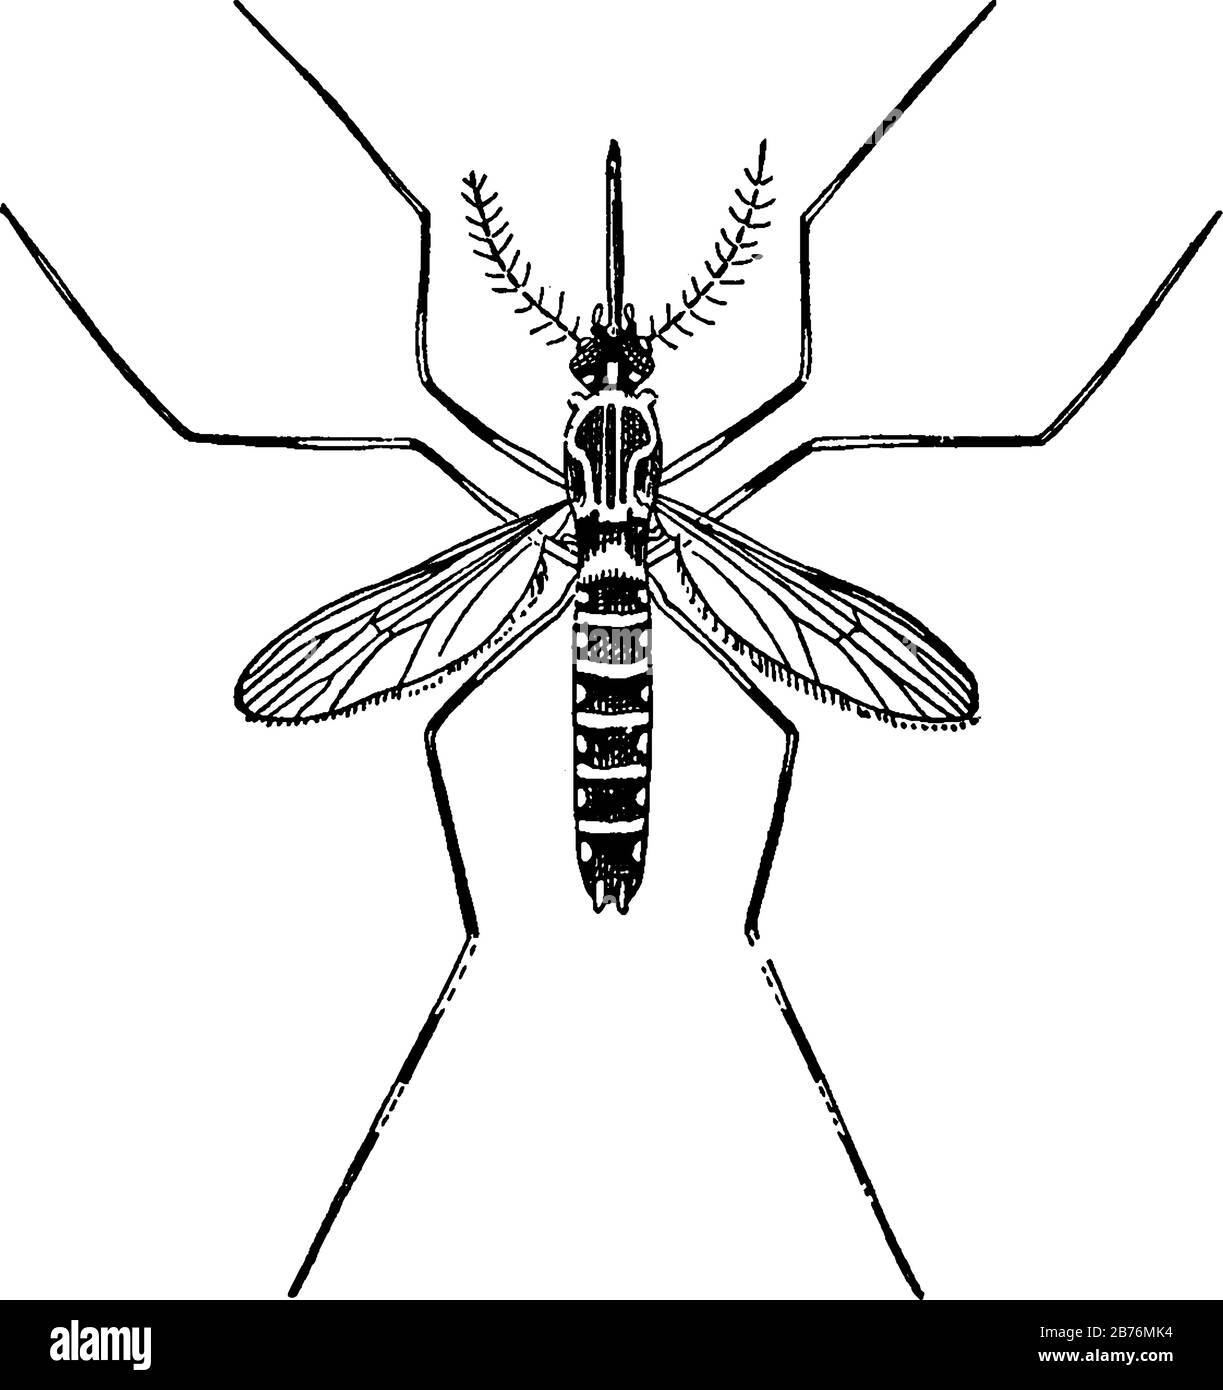 Sie haben einen schlanken segmentierten Körper, ein Paar Flügel, drei Paar lange haarähnliche Beine und saugen die Keime der Kranken und übertragen Keime auf gesunde. Stock Vektor